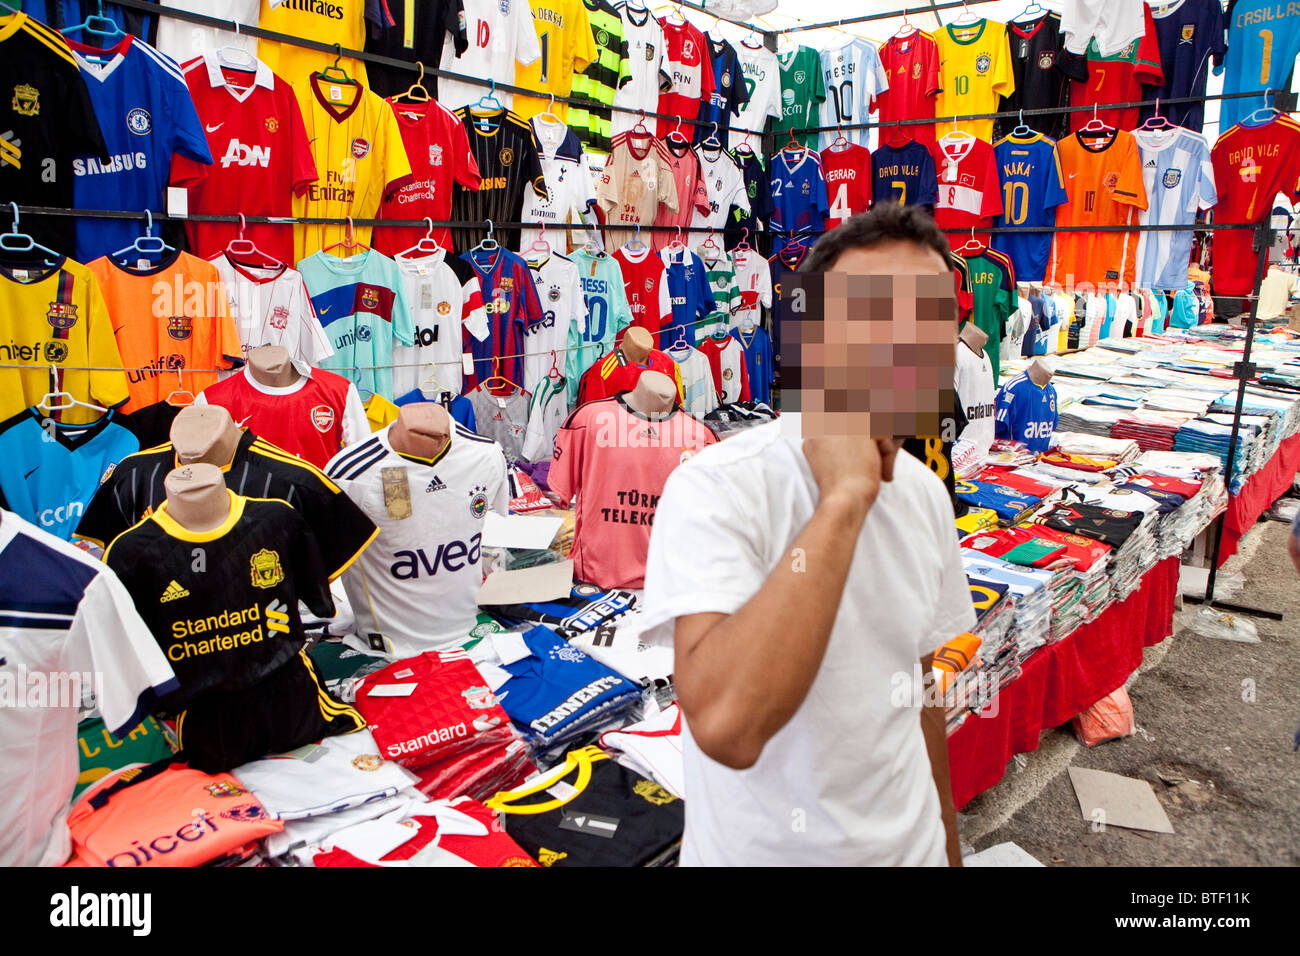 Merci contraffatte e fake merce in vendita ai turisti in un mercato turco Foto Stock